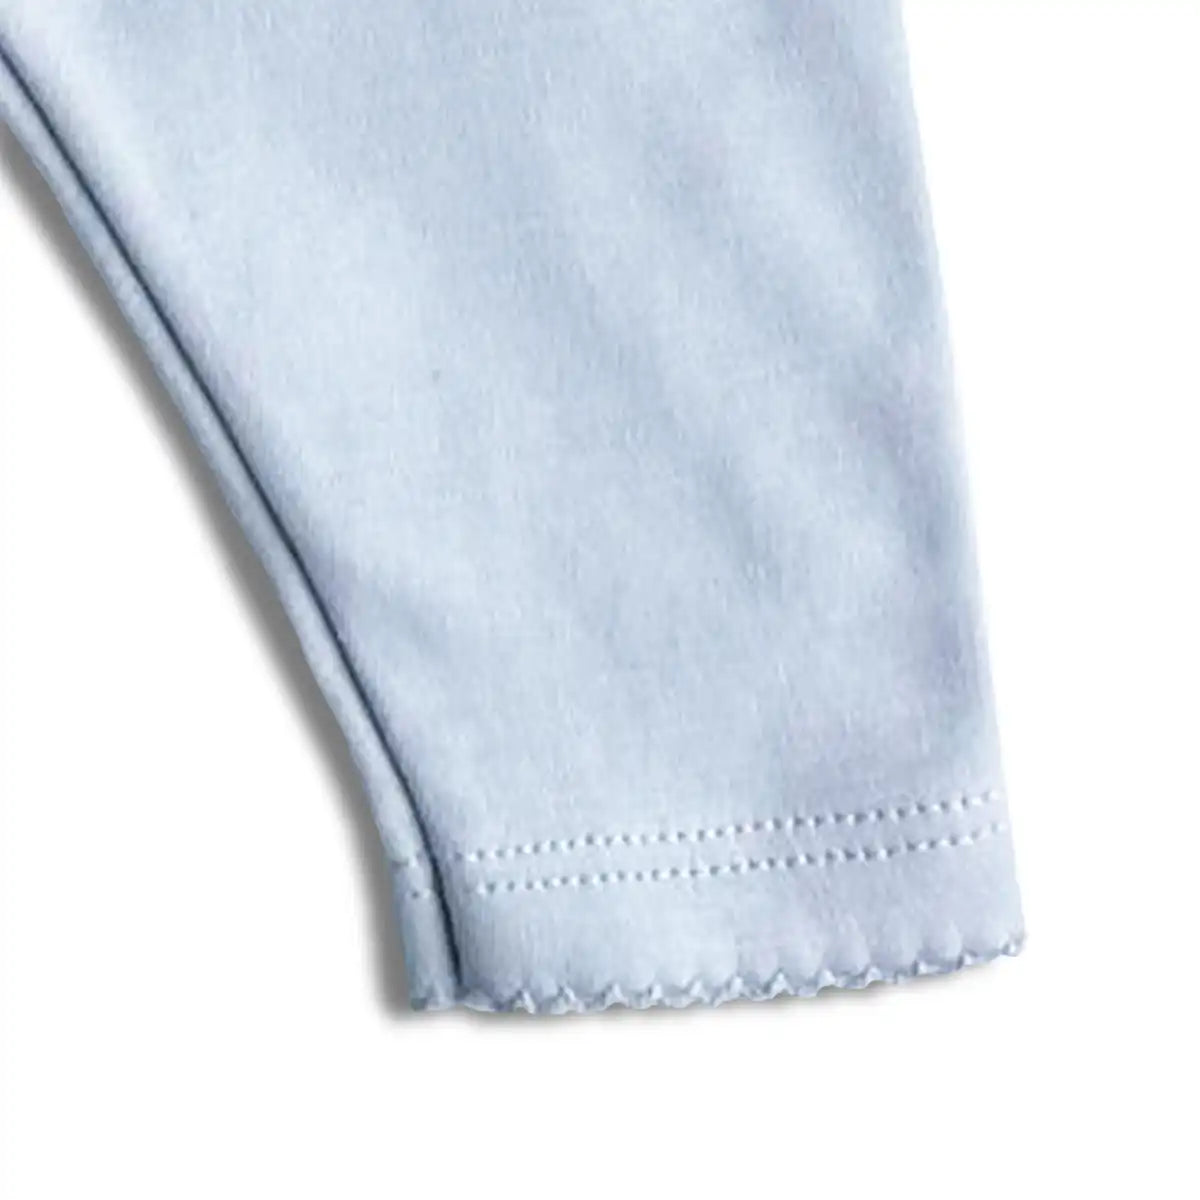 Detaljbild som visar spetsen längst ned på benet på ljusblå leggings i mjuk ekologisk pimabomull